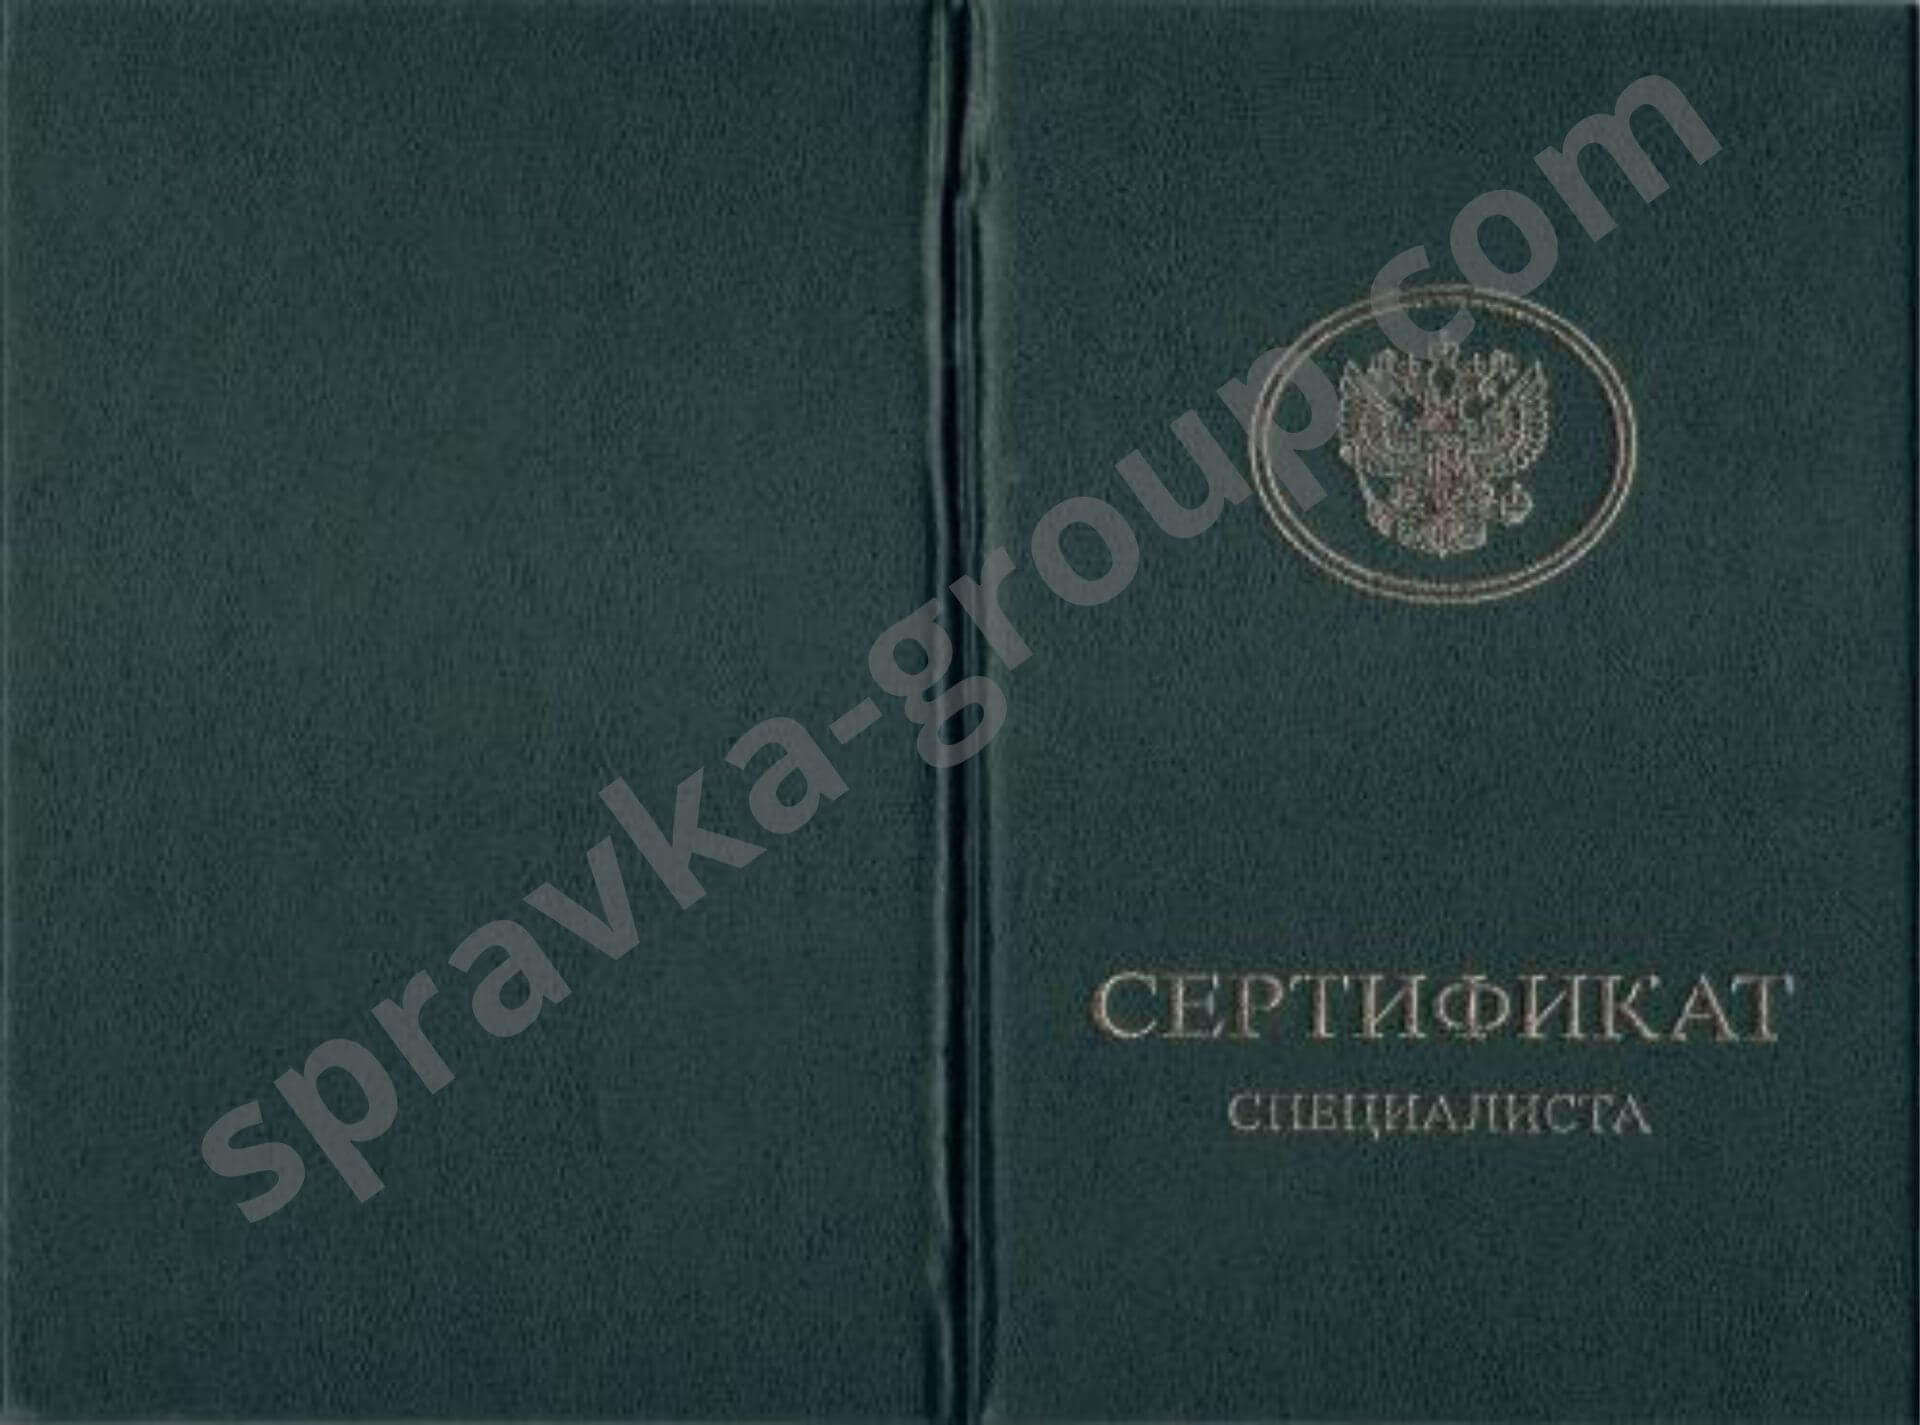 Купить медицинский сертификат специалиста в Москве, фото №3